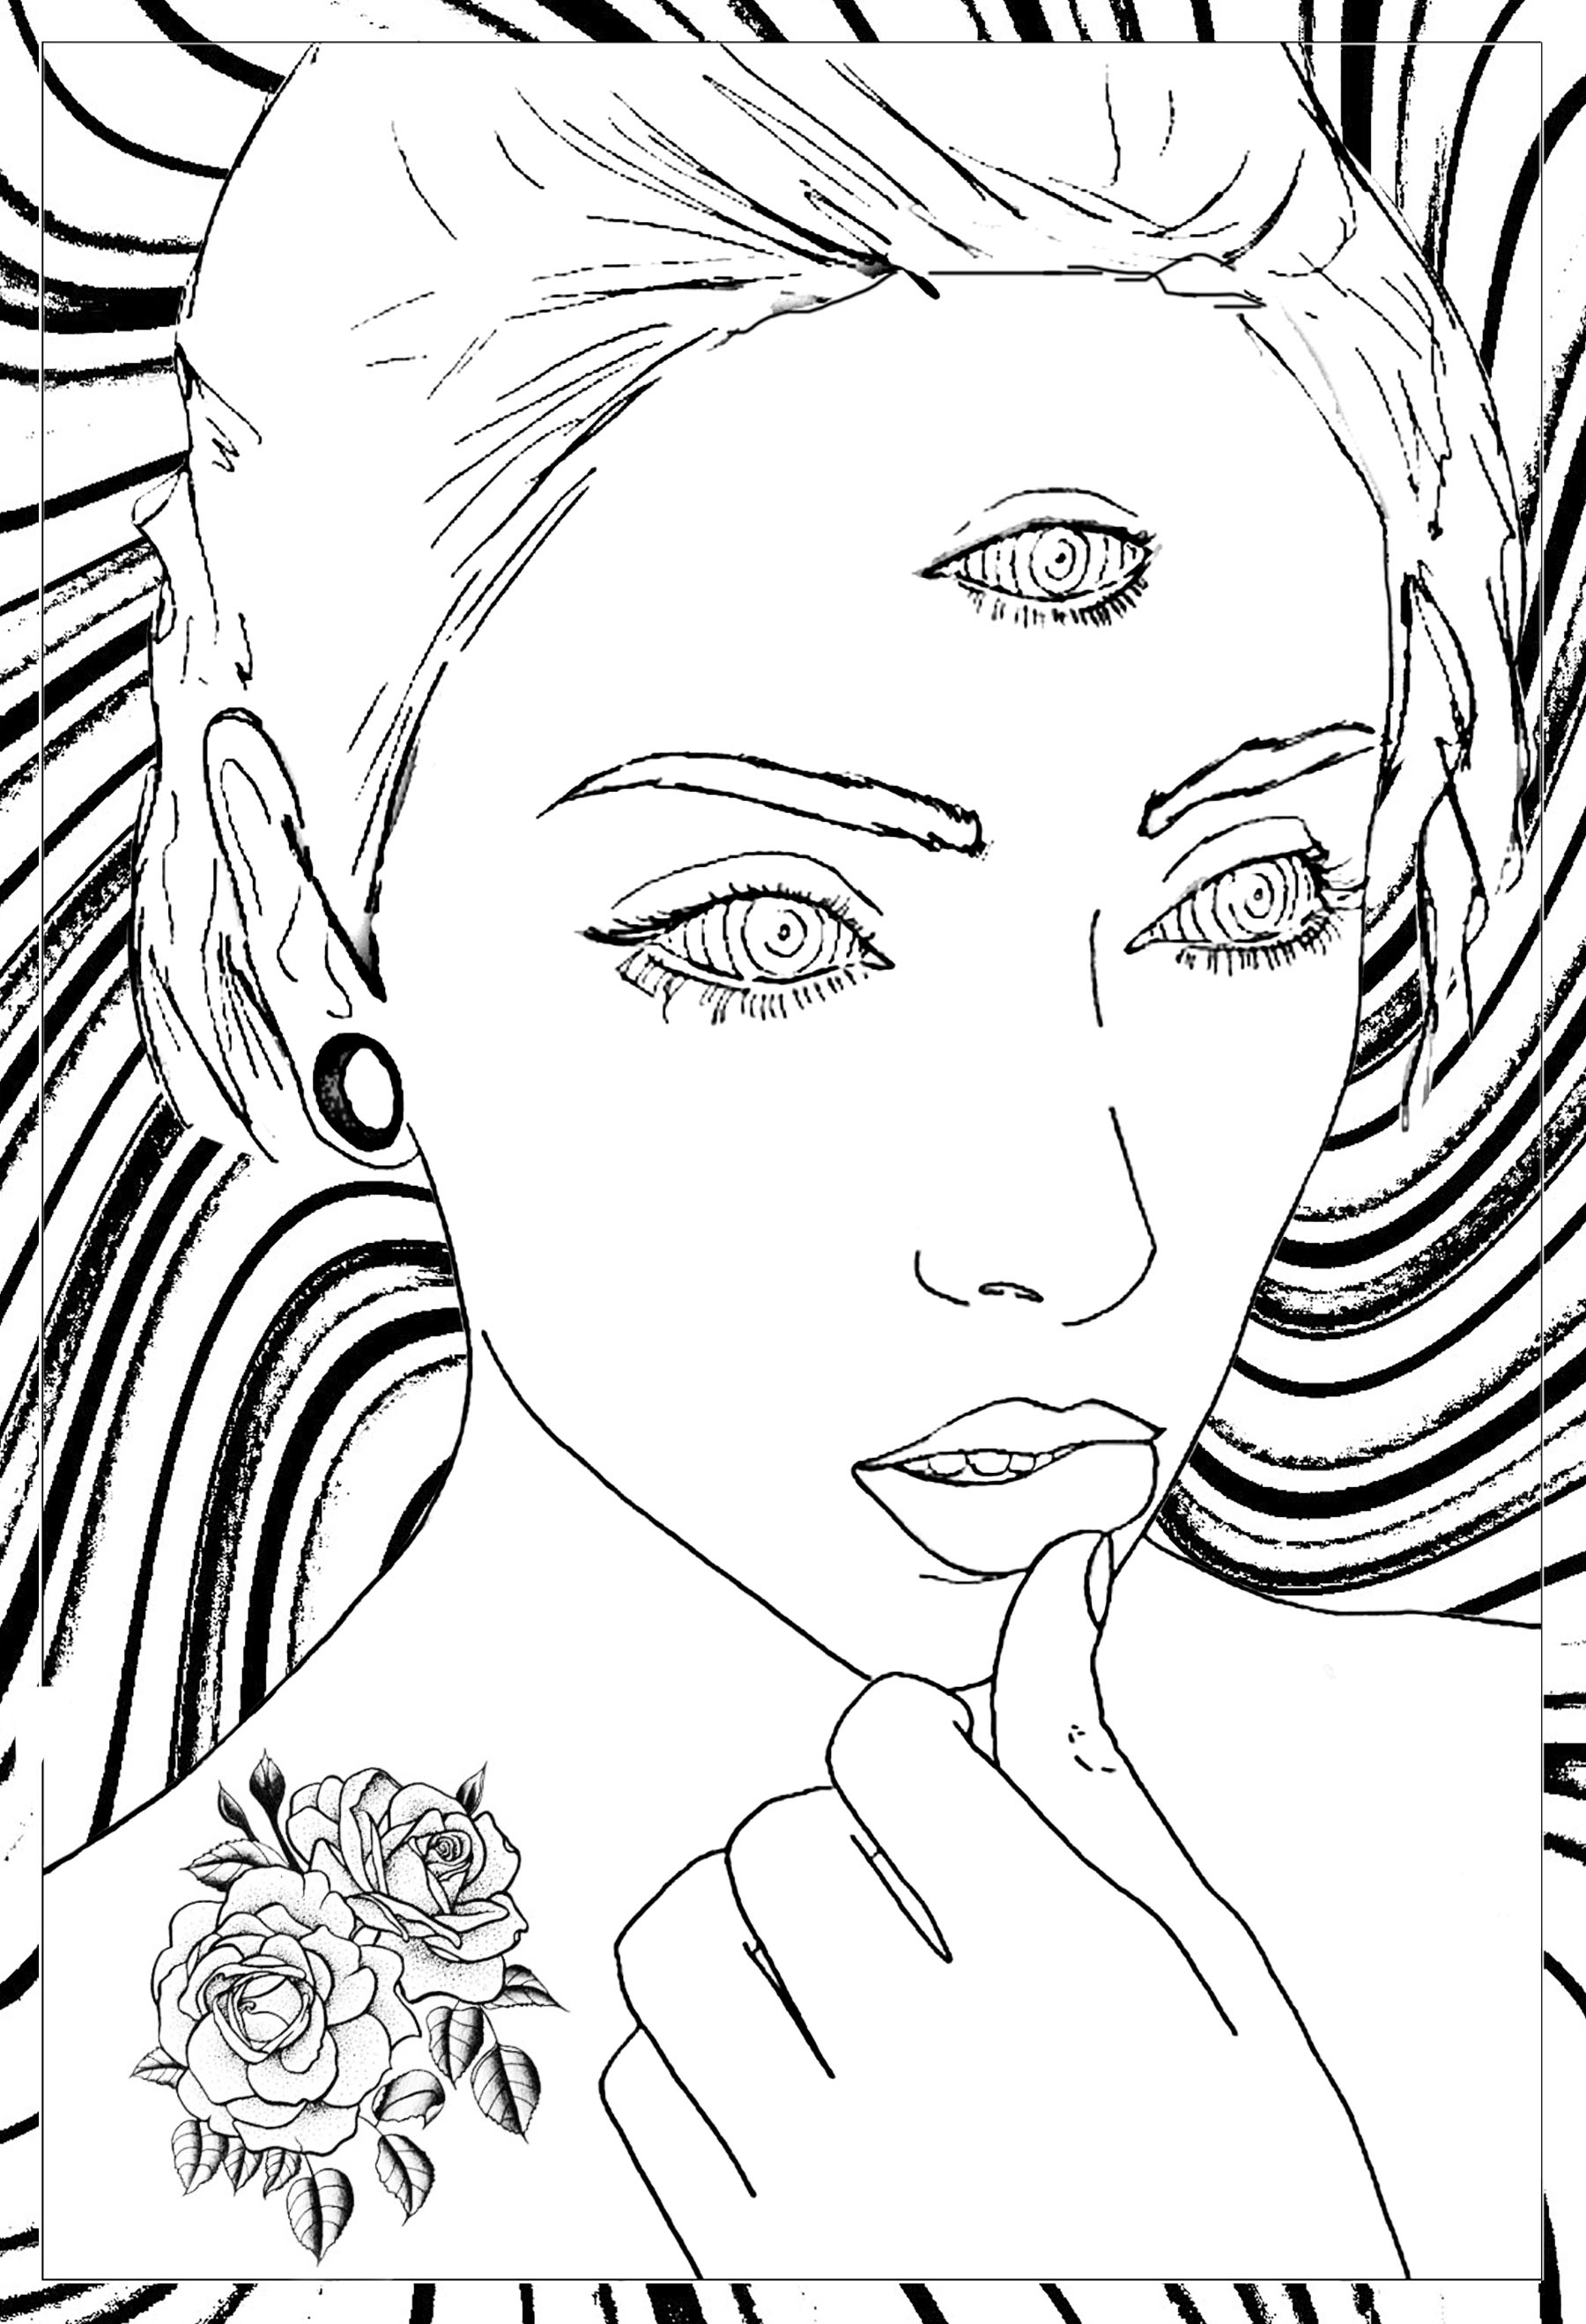 Dibujo original de una mujer pensativa con 3 ojos ... con un fondo muy psicodélico